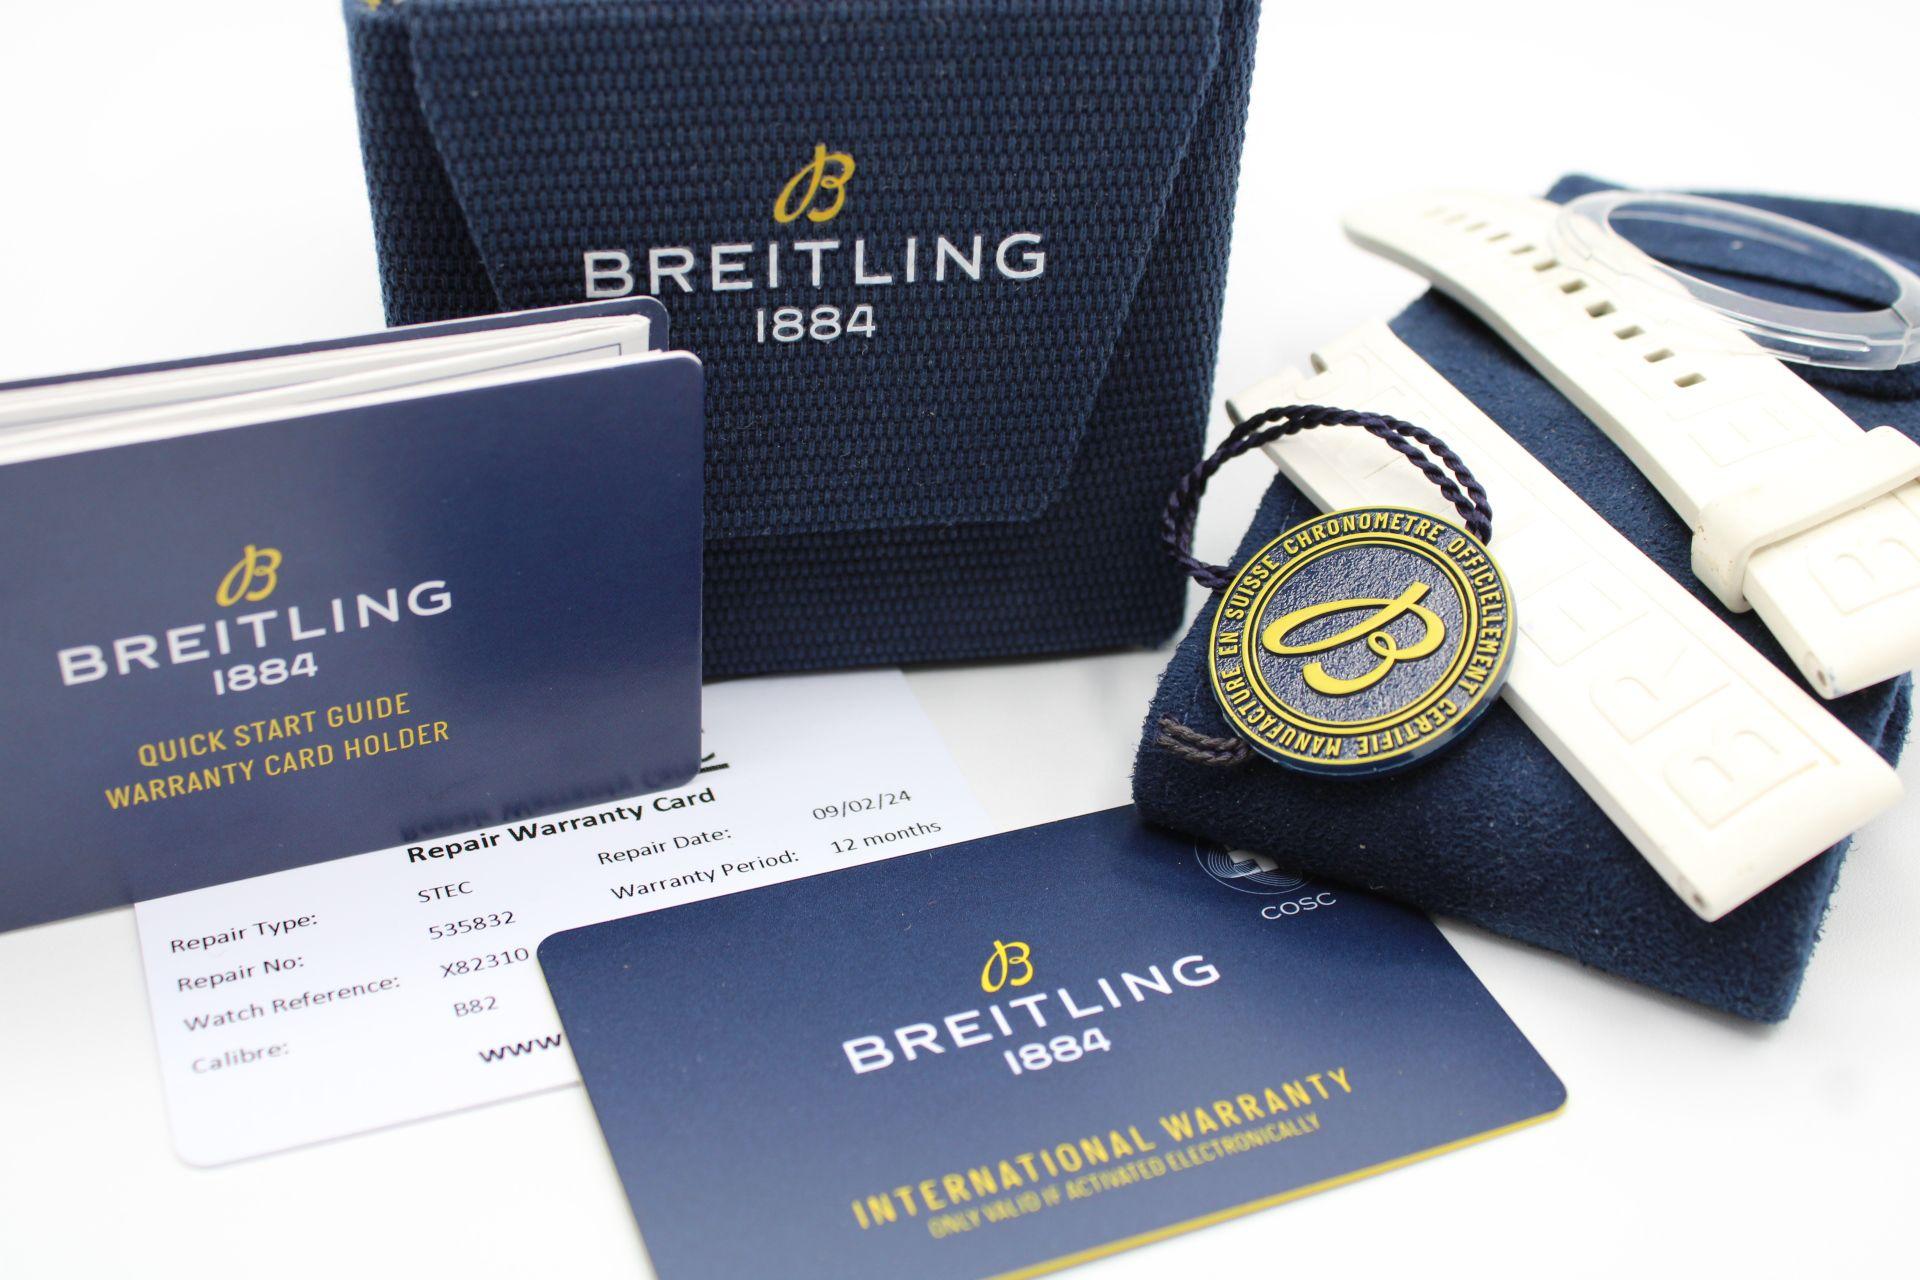 Die Breitling Endurance Pro bietet einen hohen Wert in einer Uhr sowie als anders und langlebig. Dieses Modell, das X82310, wird mit unserer 12-monatigen Garantie geliefert. Original-Garantiekarte, Box, zusätzliche Breitling White Rubber Strap und